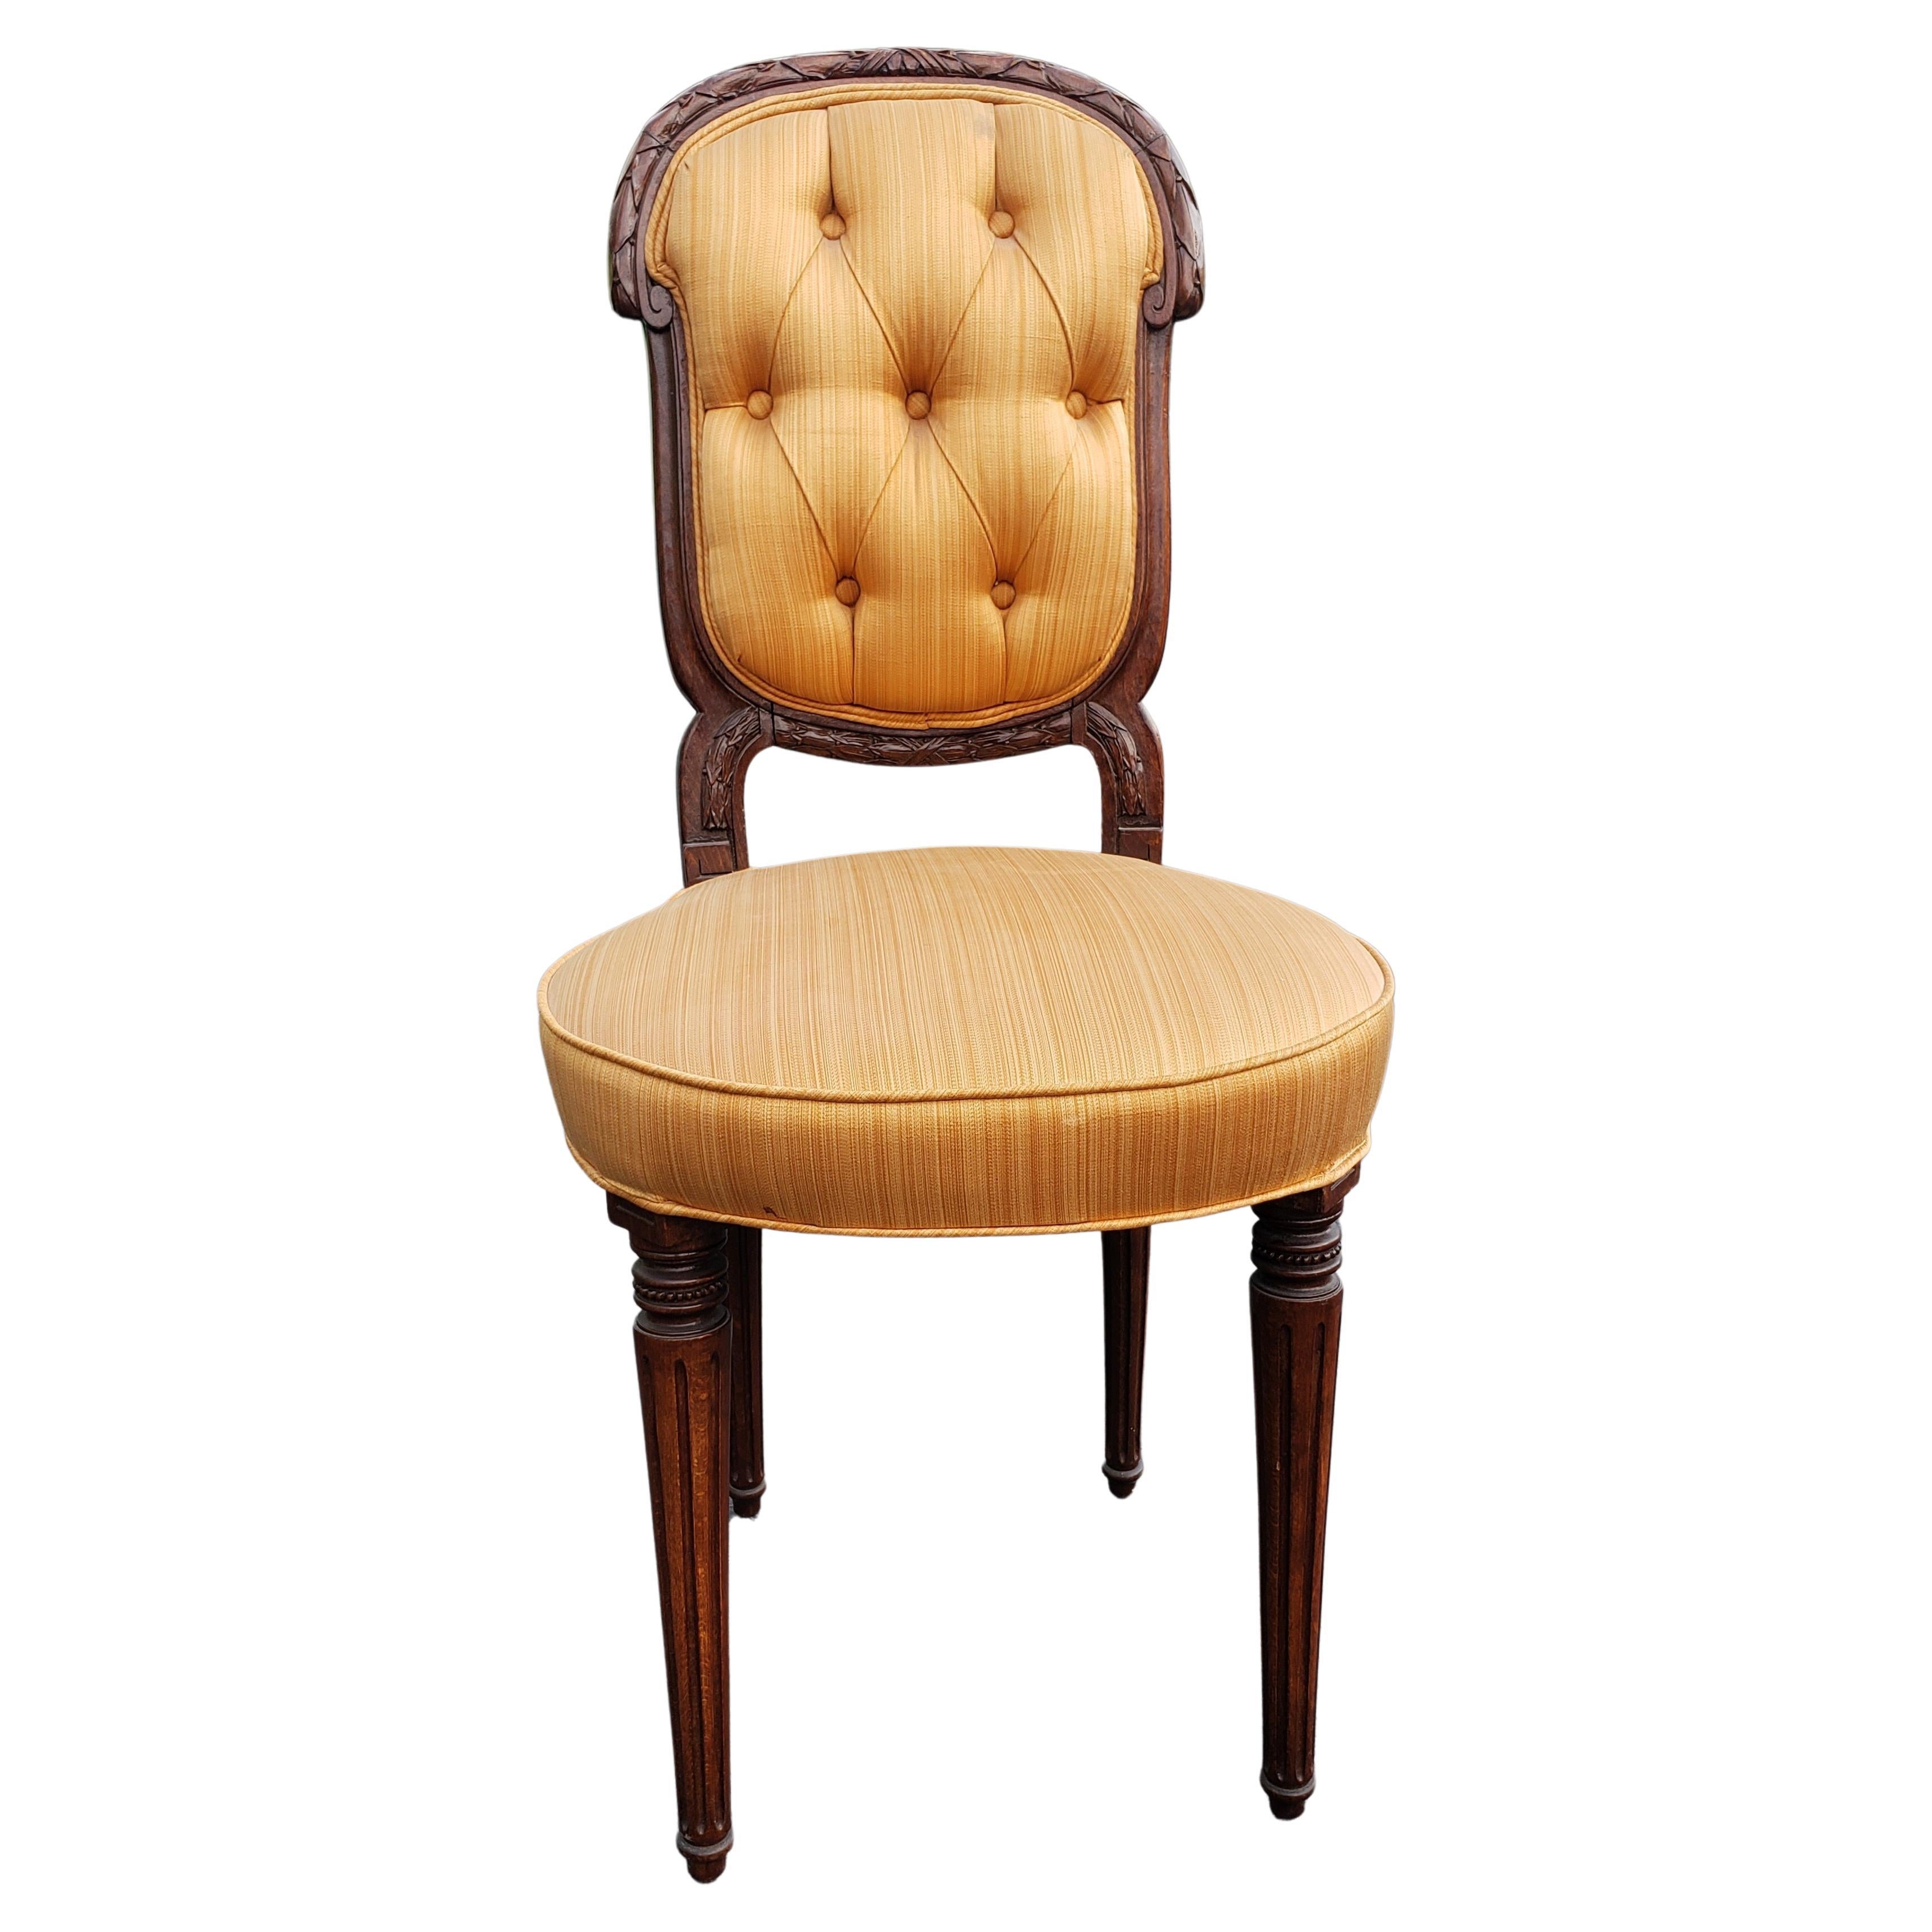 Une exquise petite chaise de bureau des années 1950 en acajou sculpté et tapissée de soie en très bon état. Siège confortable en bon état. Magnifique dossier sculpté de feuilles d'acanthe et pieds cannelés.
Mesure 16,5 pouces de largeur, 16,5